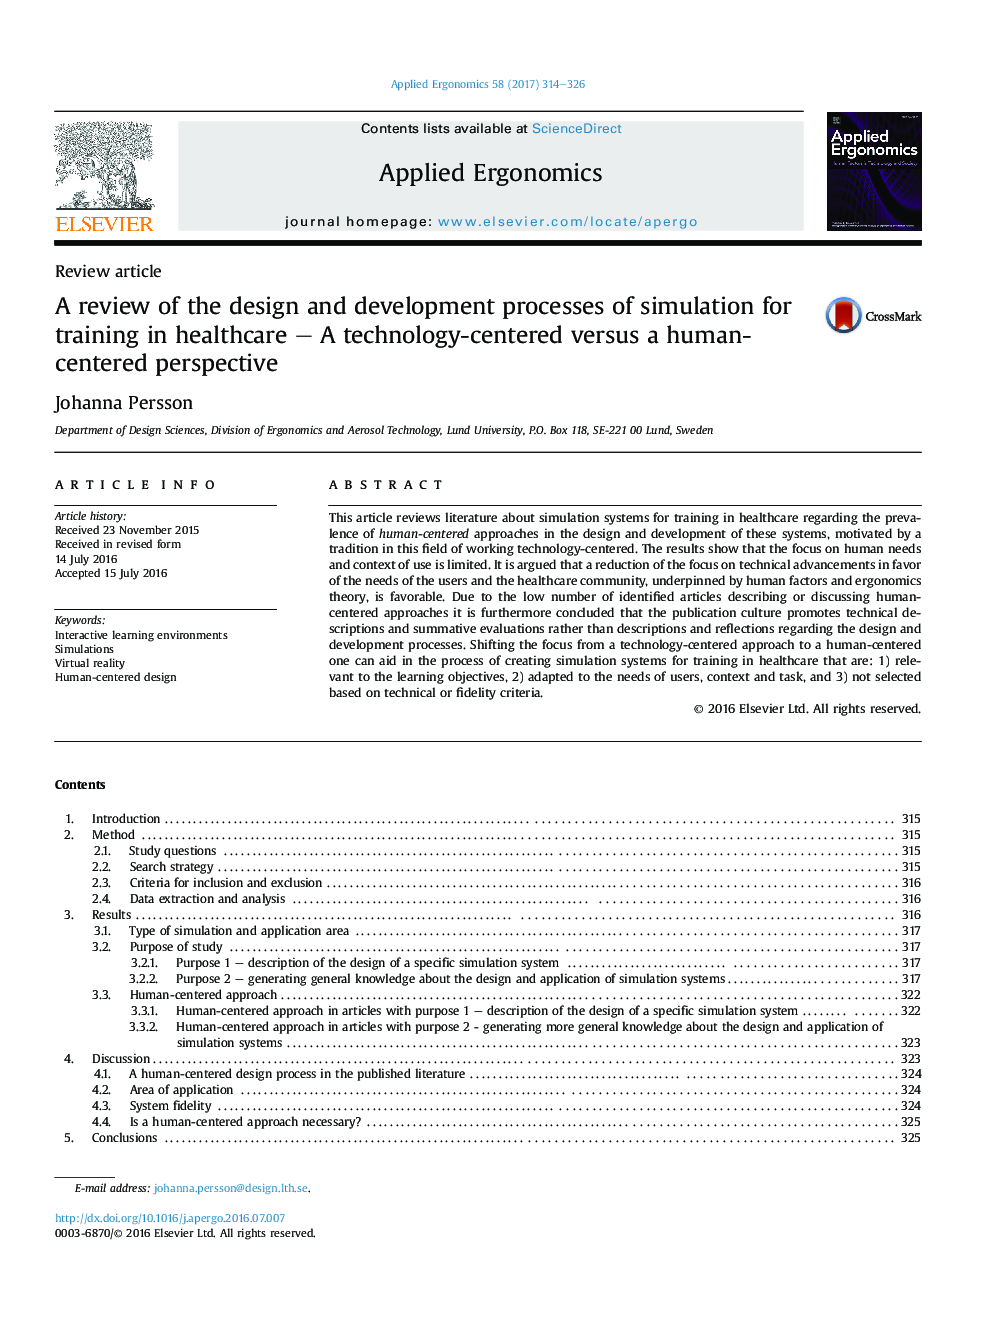 بررسی پروسه طراحی و توسعه شبیه سازی برای آموزش در زمینه مراقبت های بهداشتی - تکنولوژی محور در مقابل دیدگاه انسان محور 